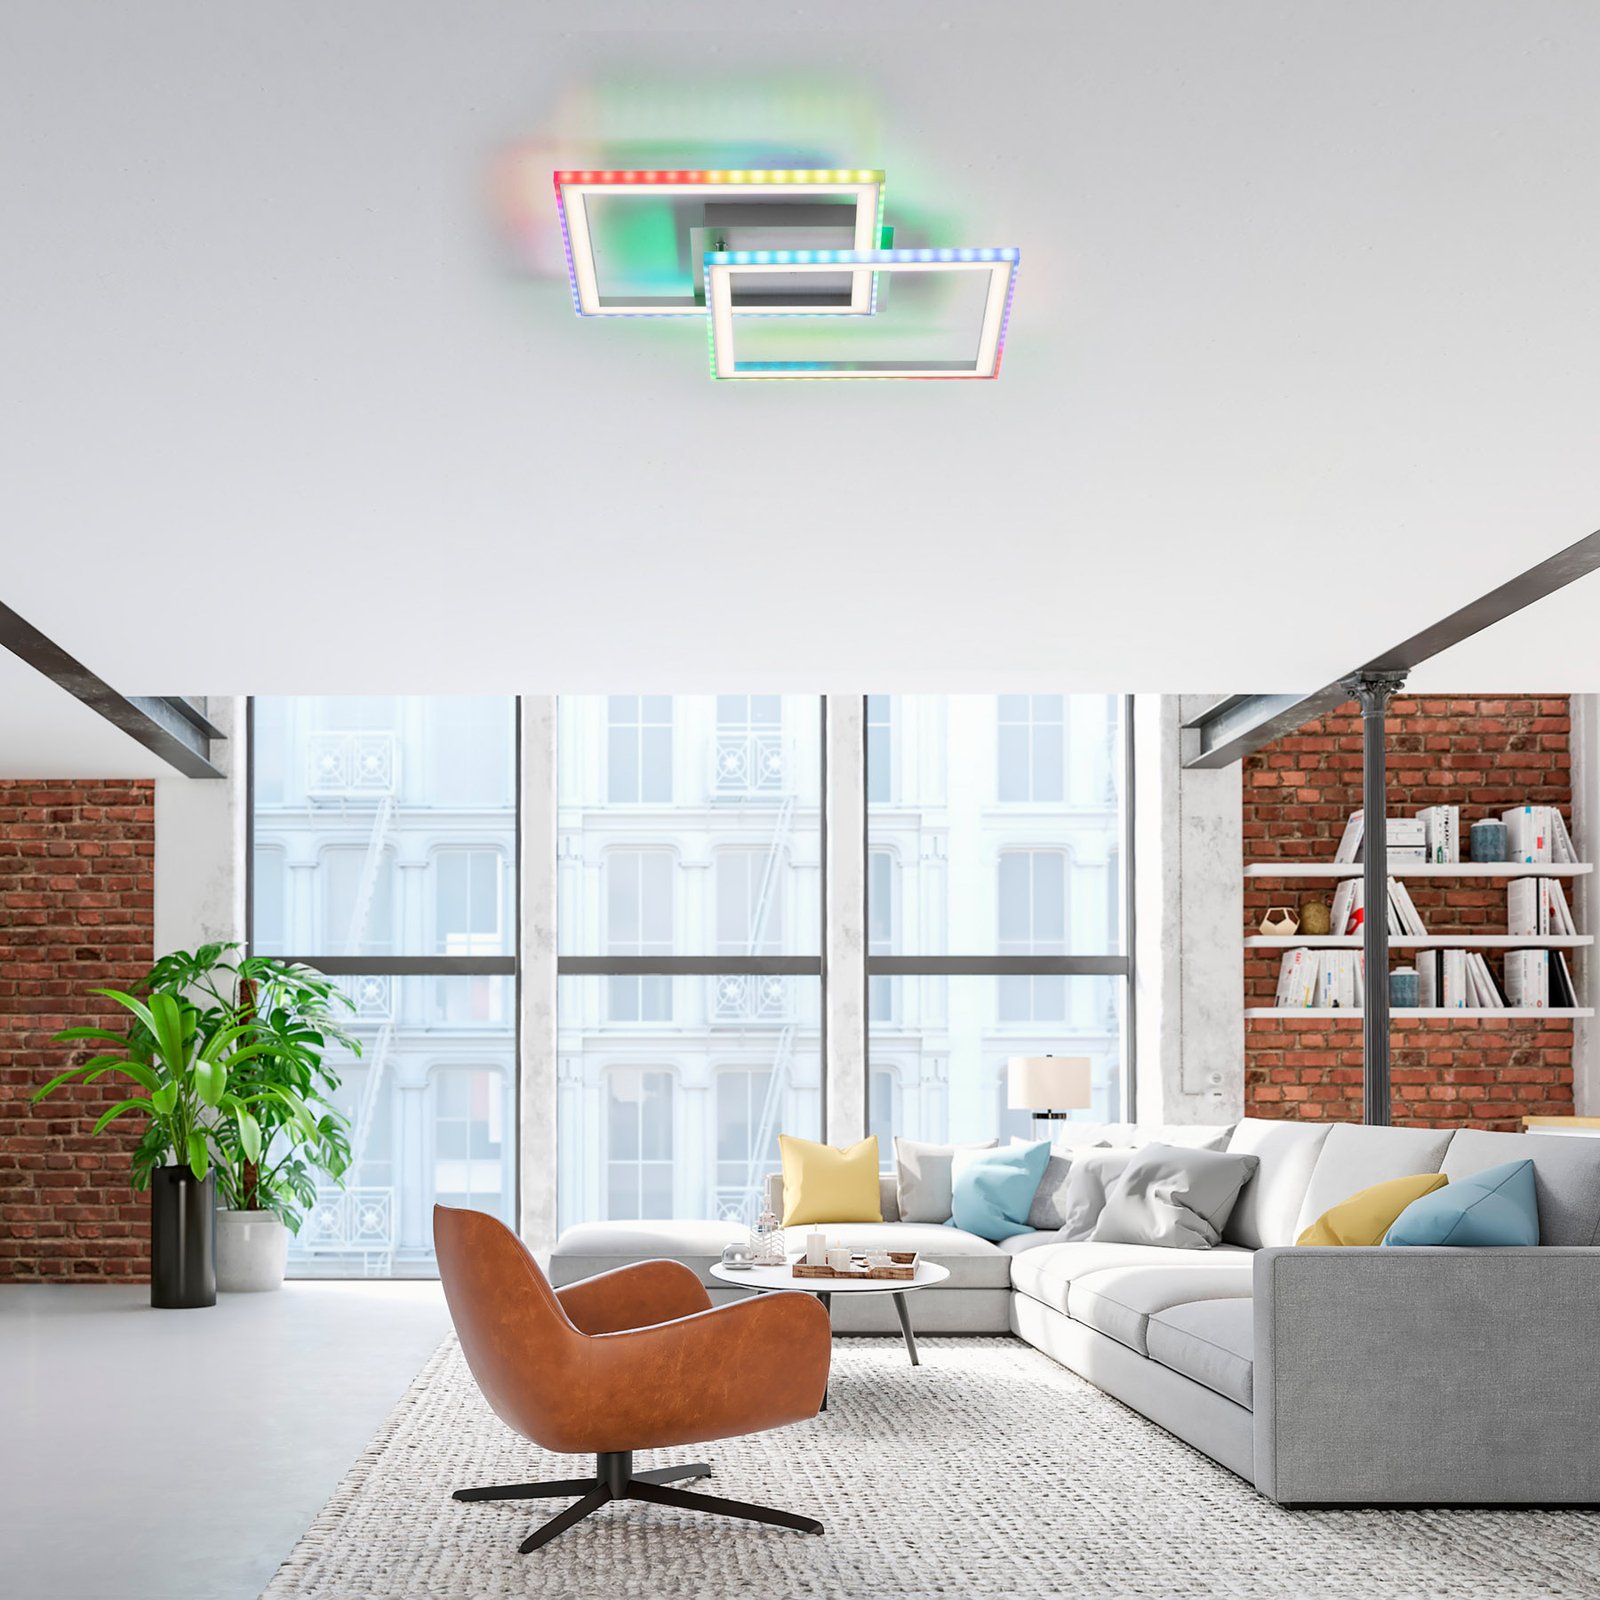 LED ceiling light Felix60, 44.5x44.5cm